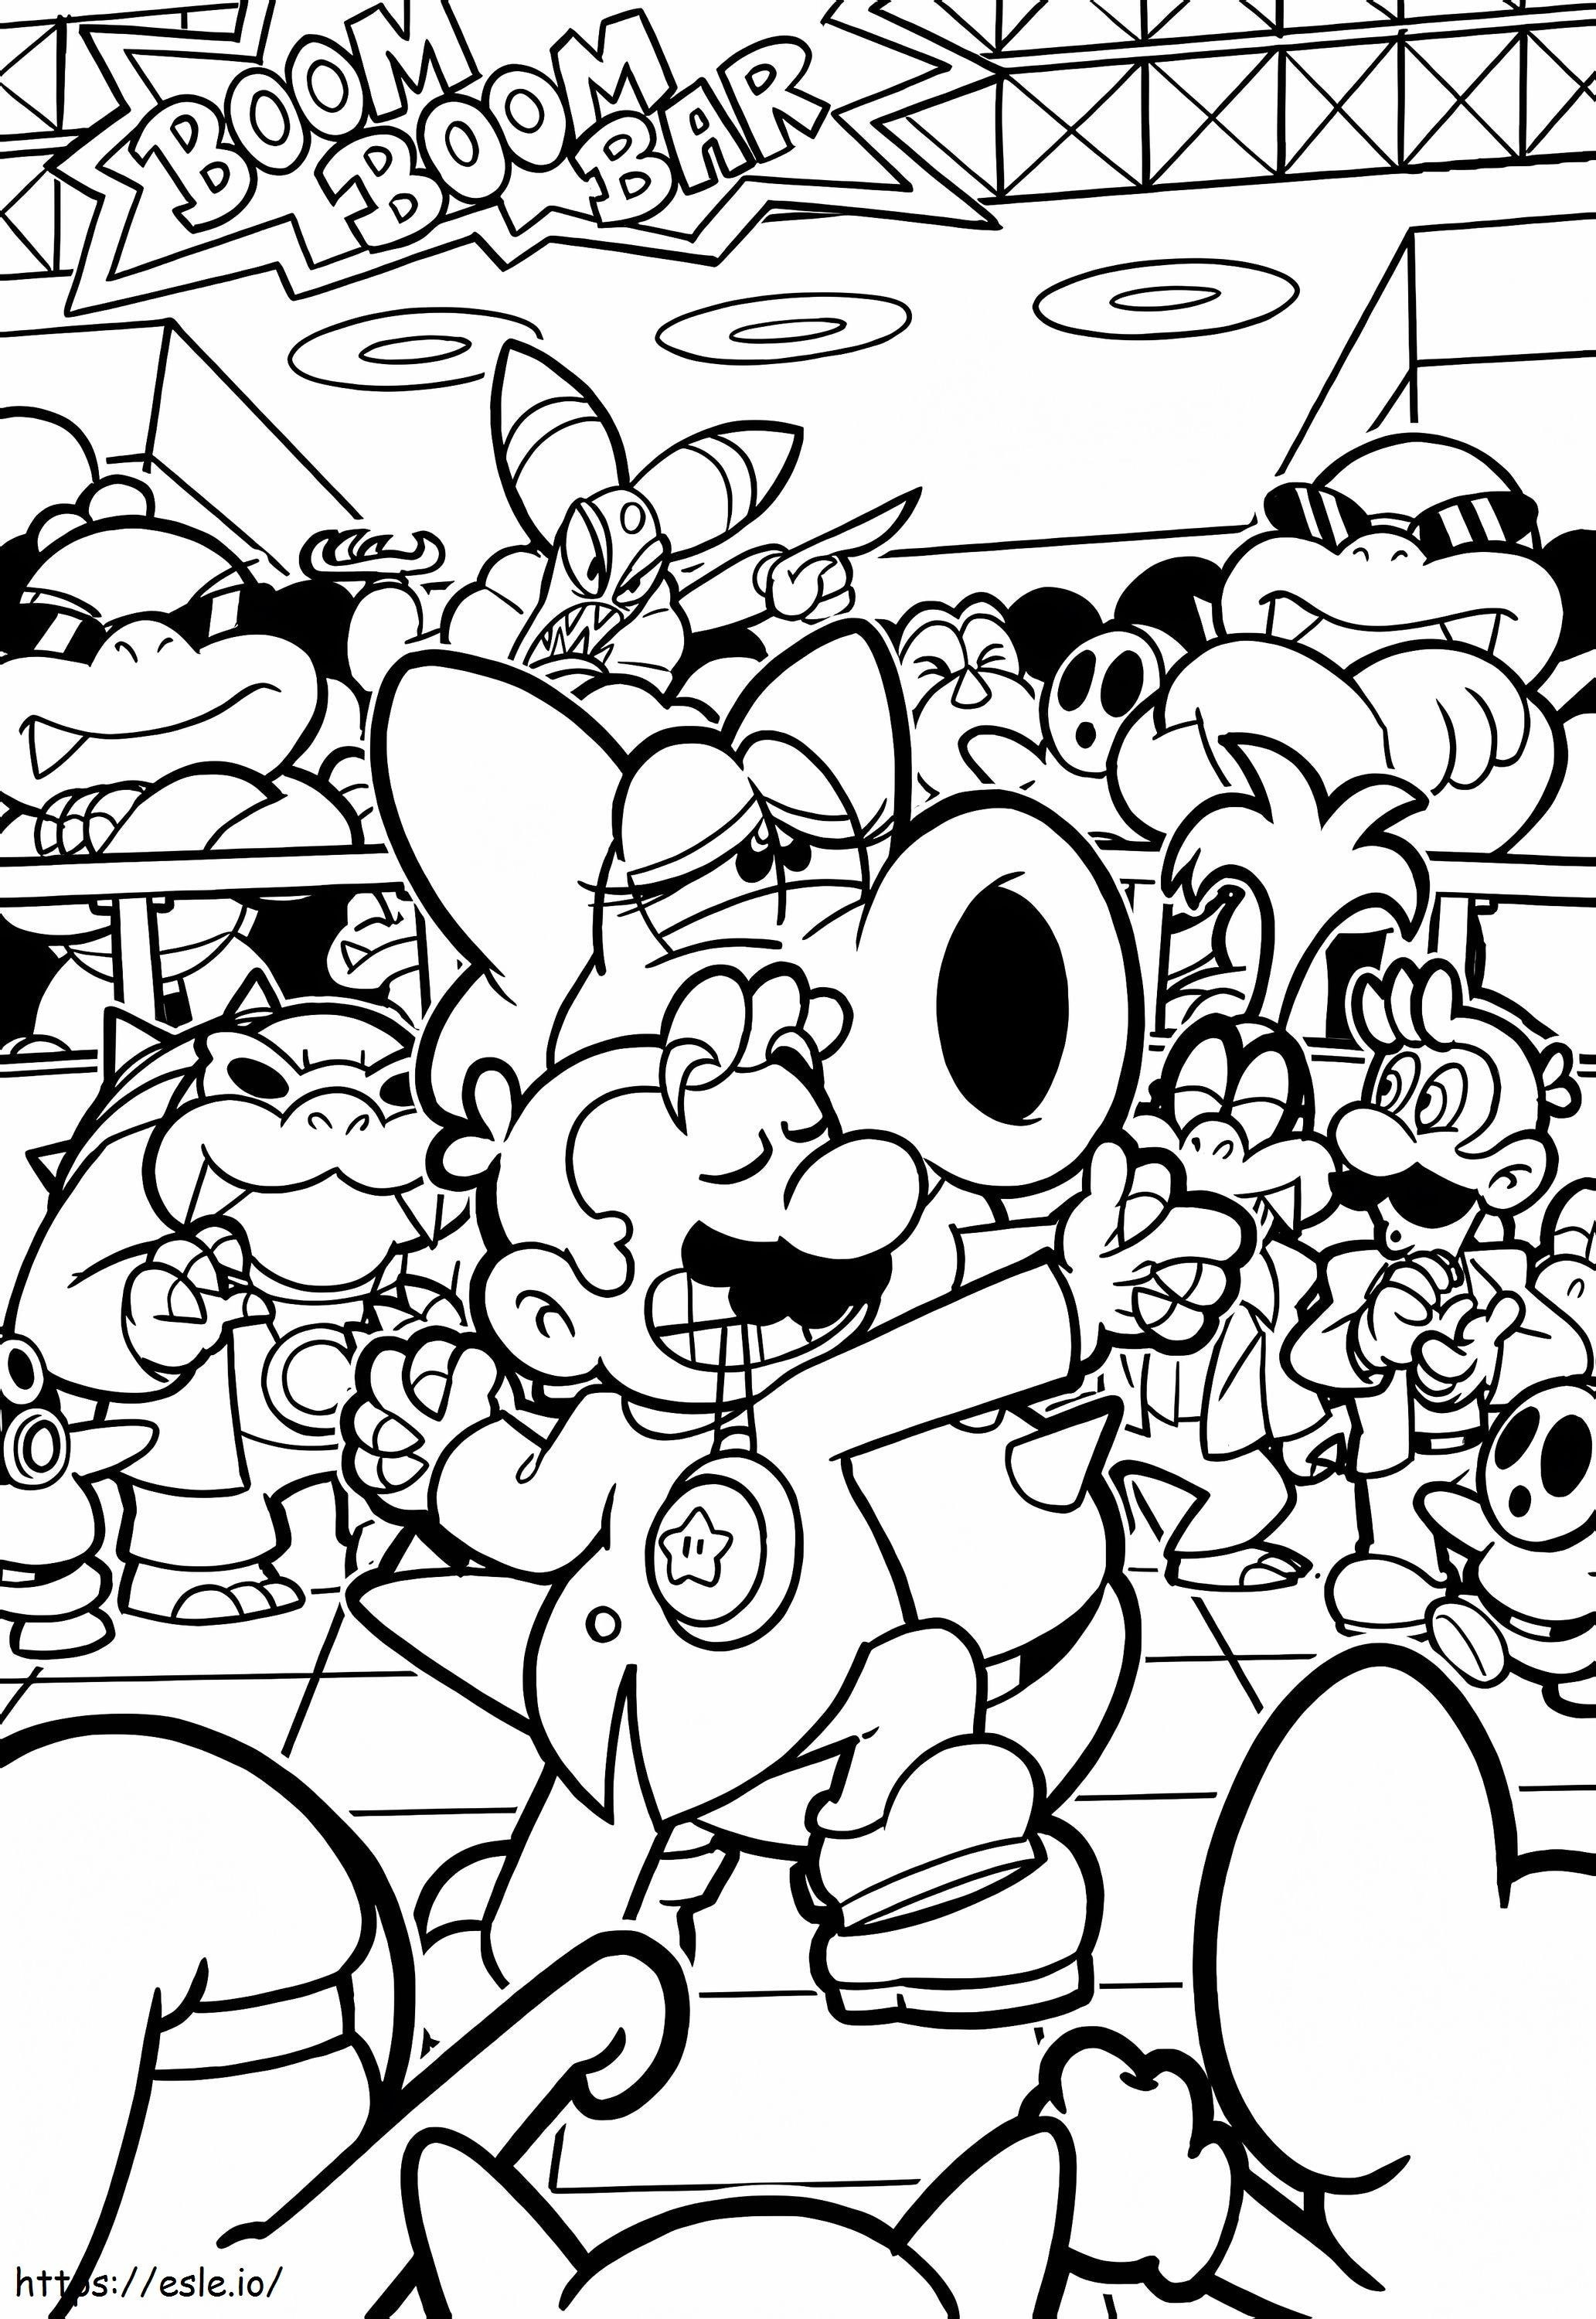 Mario Dancing coloring page